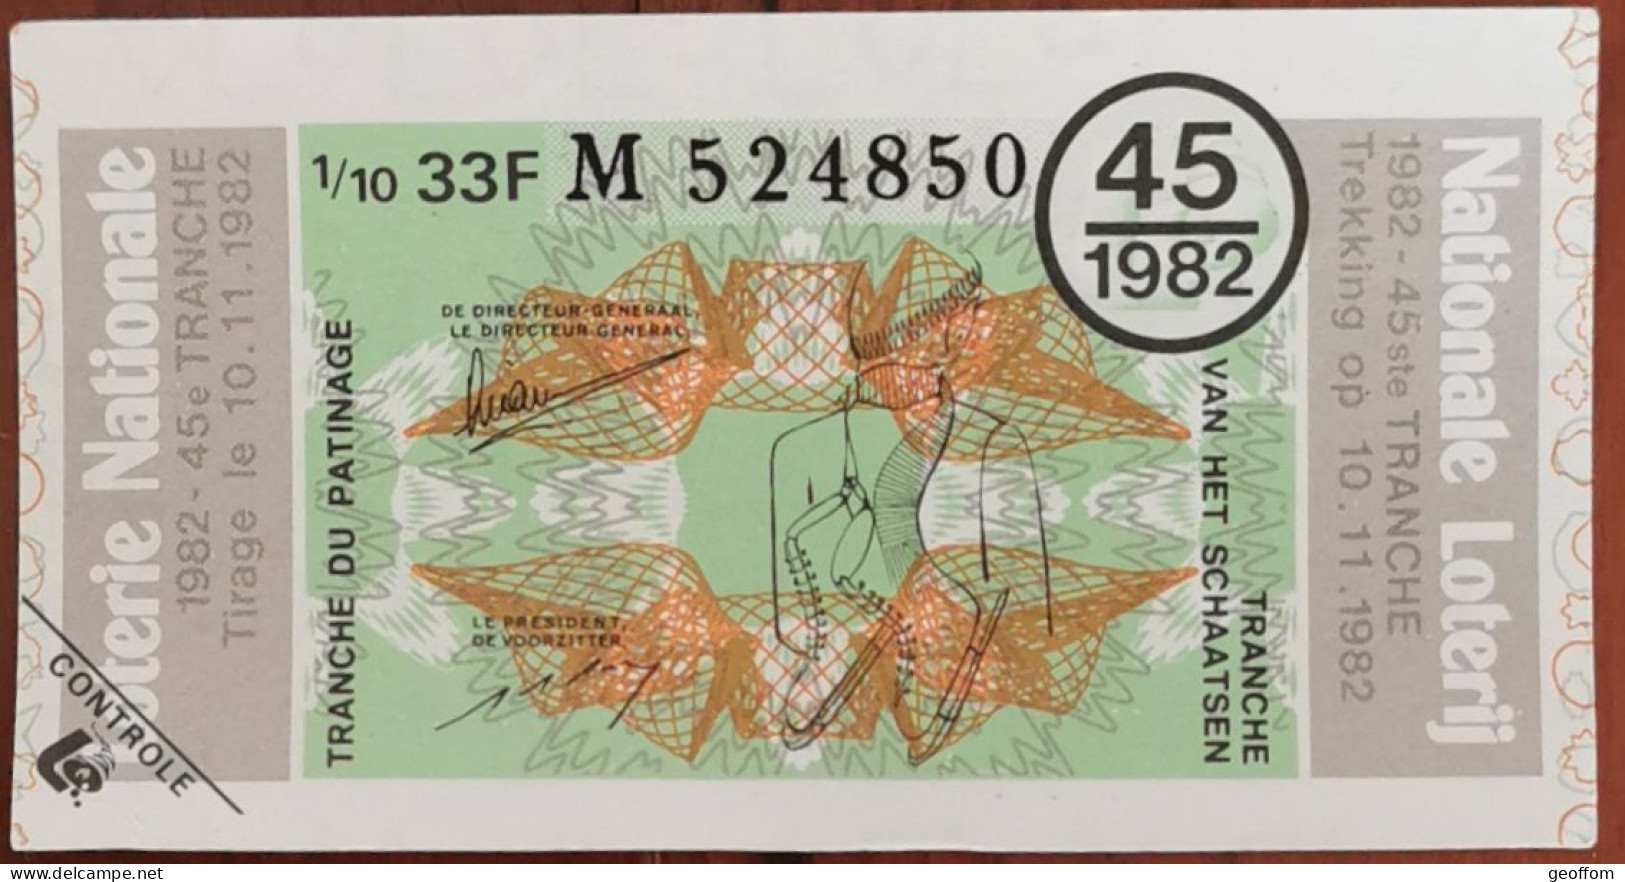 Billet De Loterie Nationale Belgique 1982 45e Tr - Tranche Du Patinage - 10-11-1982 - Billetes De Lotería